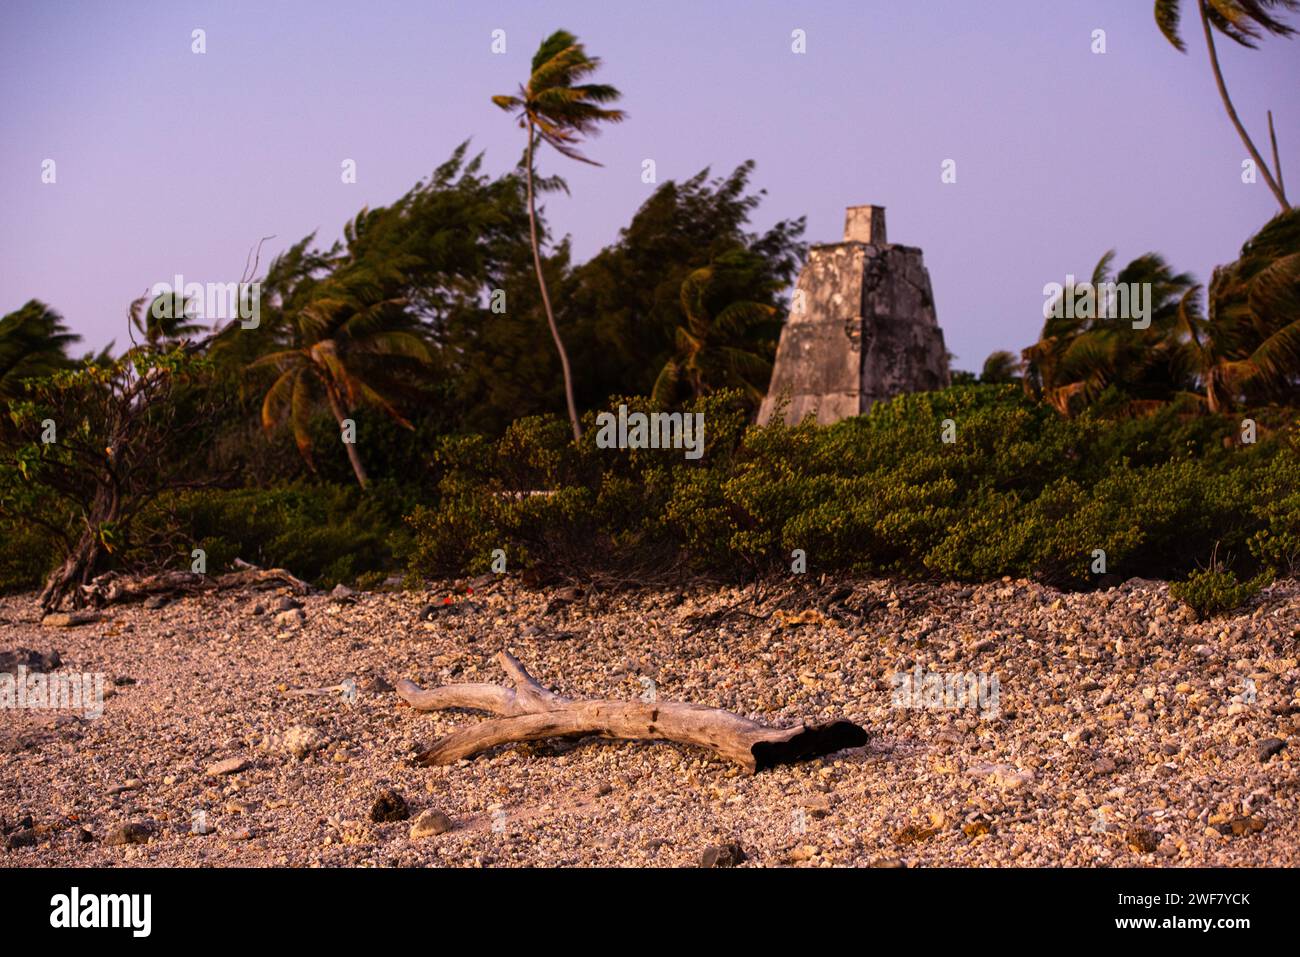 Lever de soleil sur l'un des plus anciens phares de Polynésie, vieux de près de 100 ans. Phare de Topaka, Fakarava, îles Tuamotu Banque D'Images